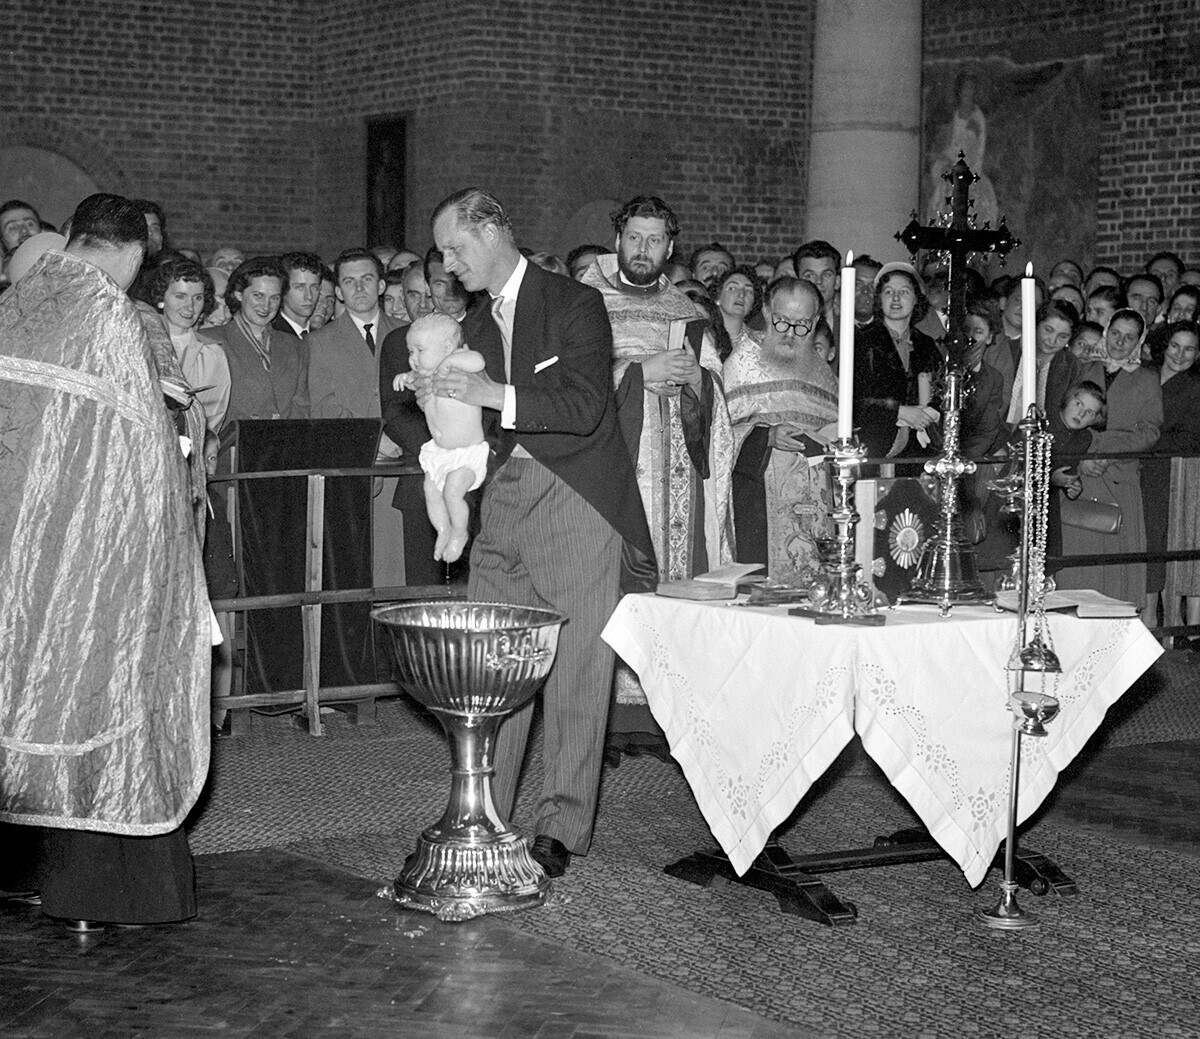 Duque de Edimburgo, que é o padrinho da criança, ergue a princesa bebê Maria da fonte após seu batismo na Igreja Ortodoxa Sérvia. A bebê é filha da sobrinha do duque, a princesa Cristina de Hesse e do príncipe André da Iugoslávia

